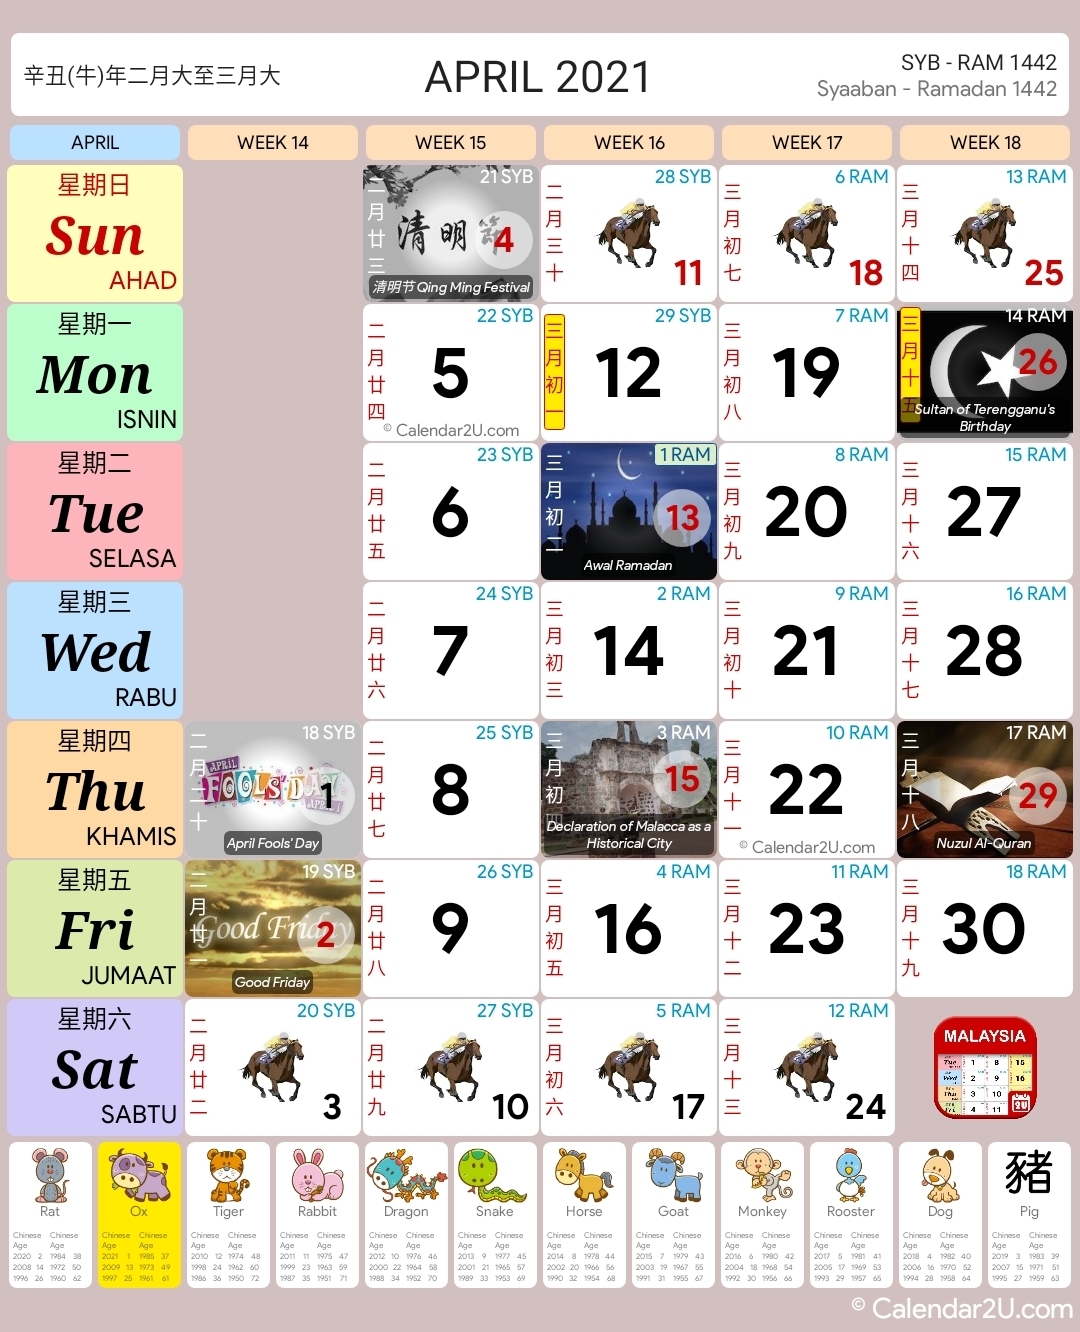 Malaysia Calendar Year 2021 - Malaysia Calendar